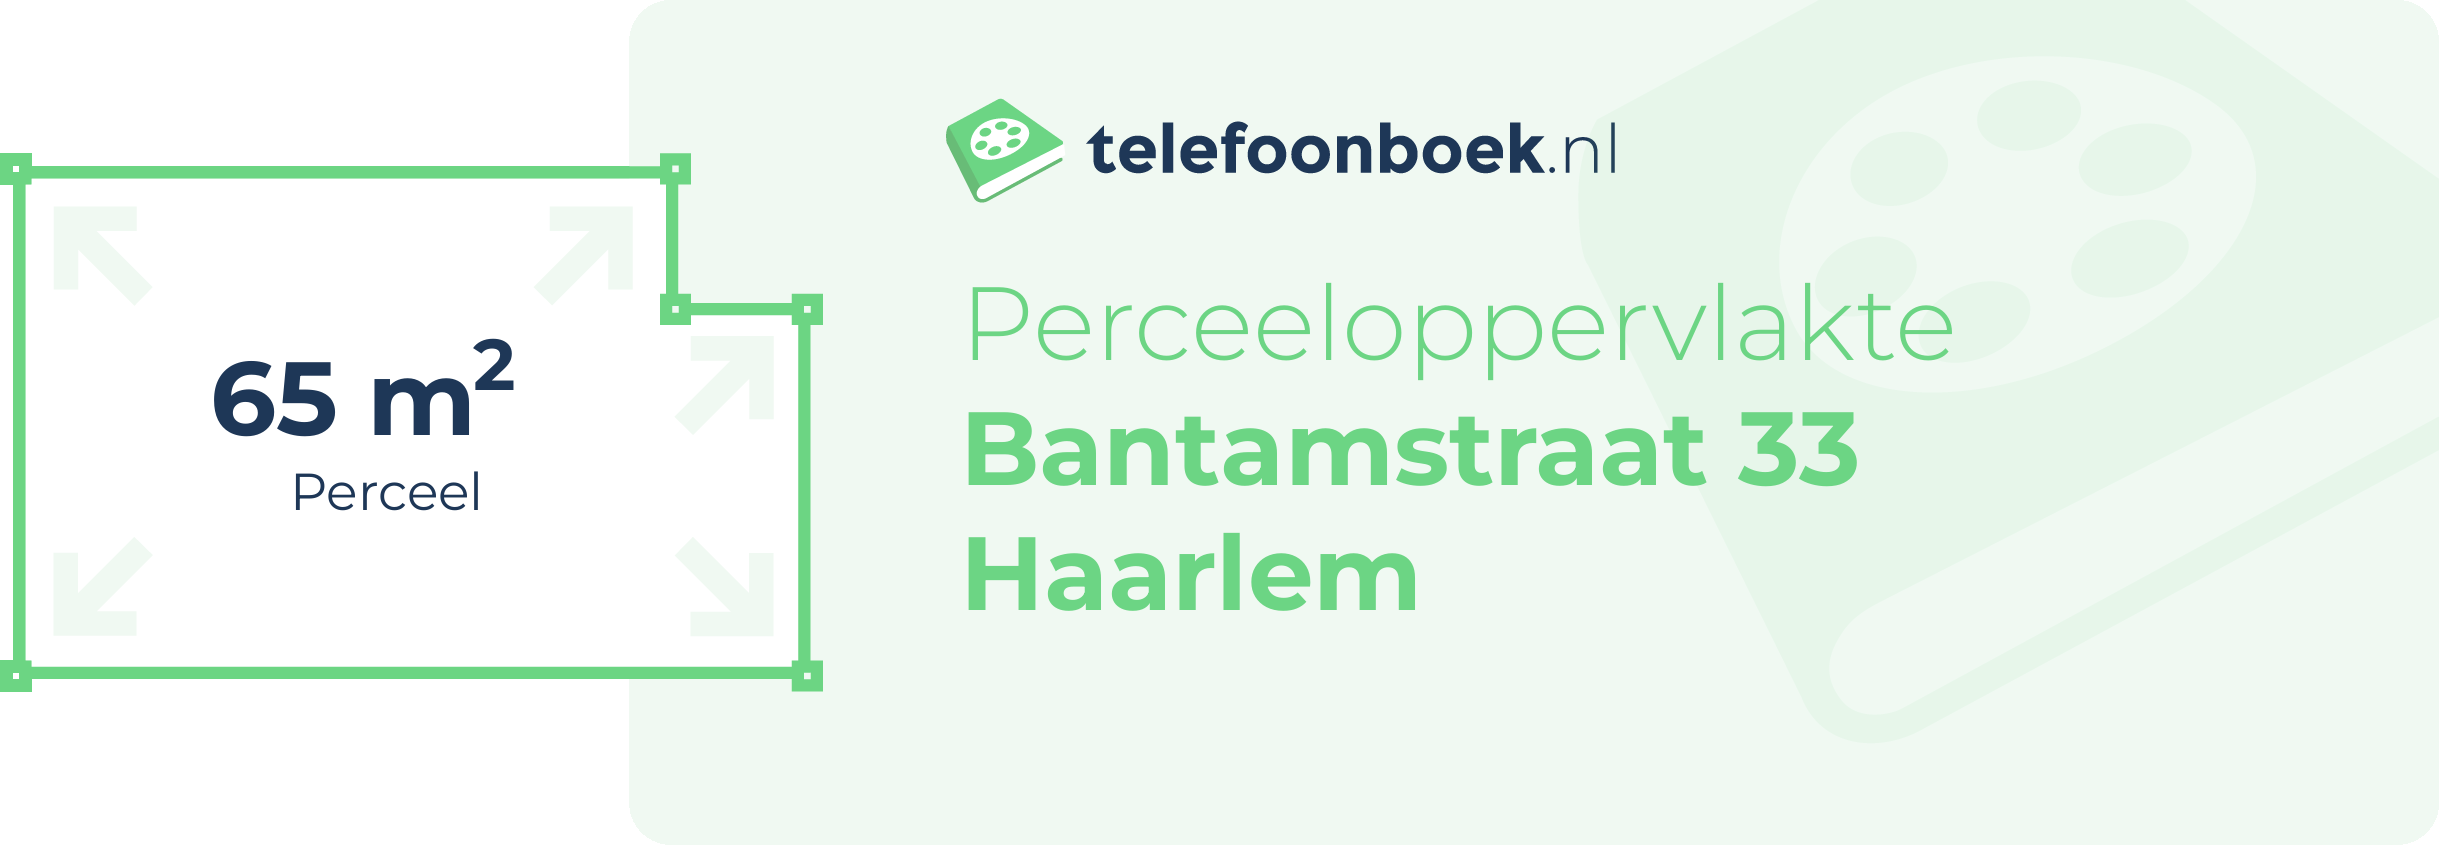 Perceeloppervlakte Bantamstraat 33 Haarlem